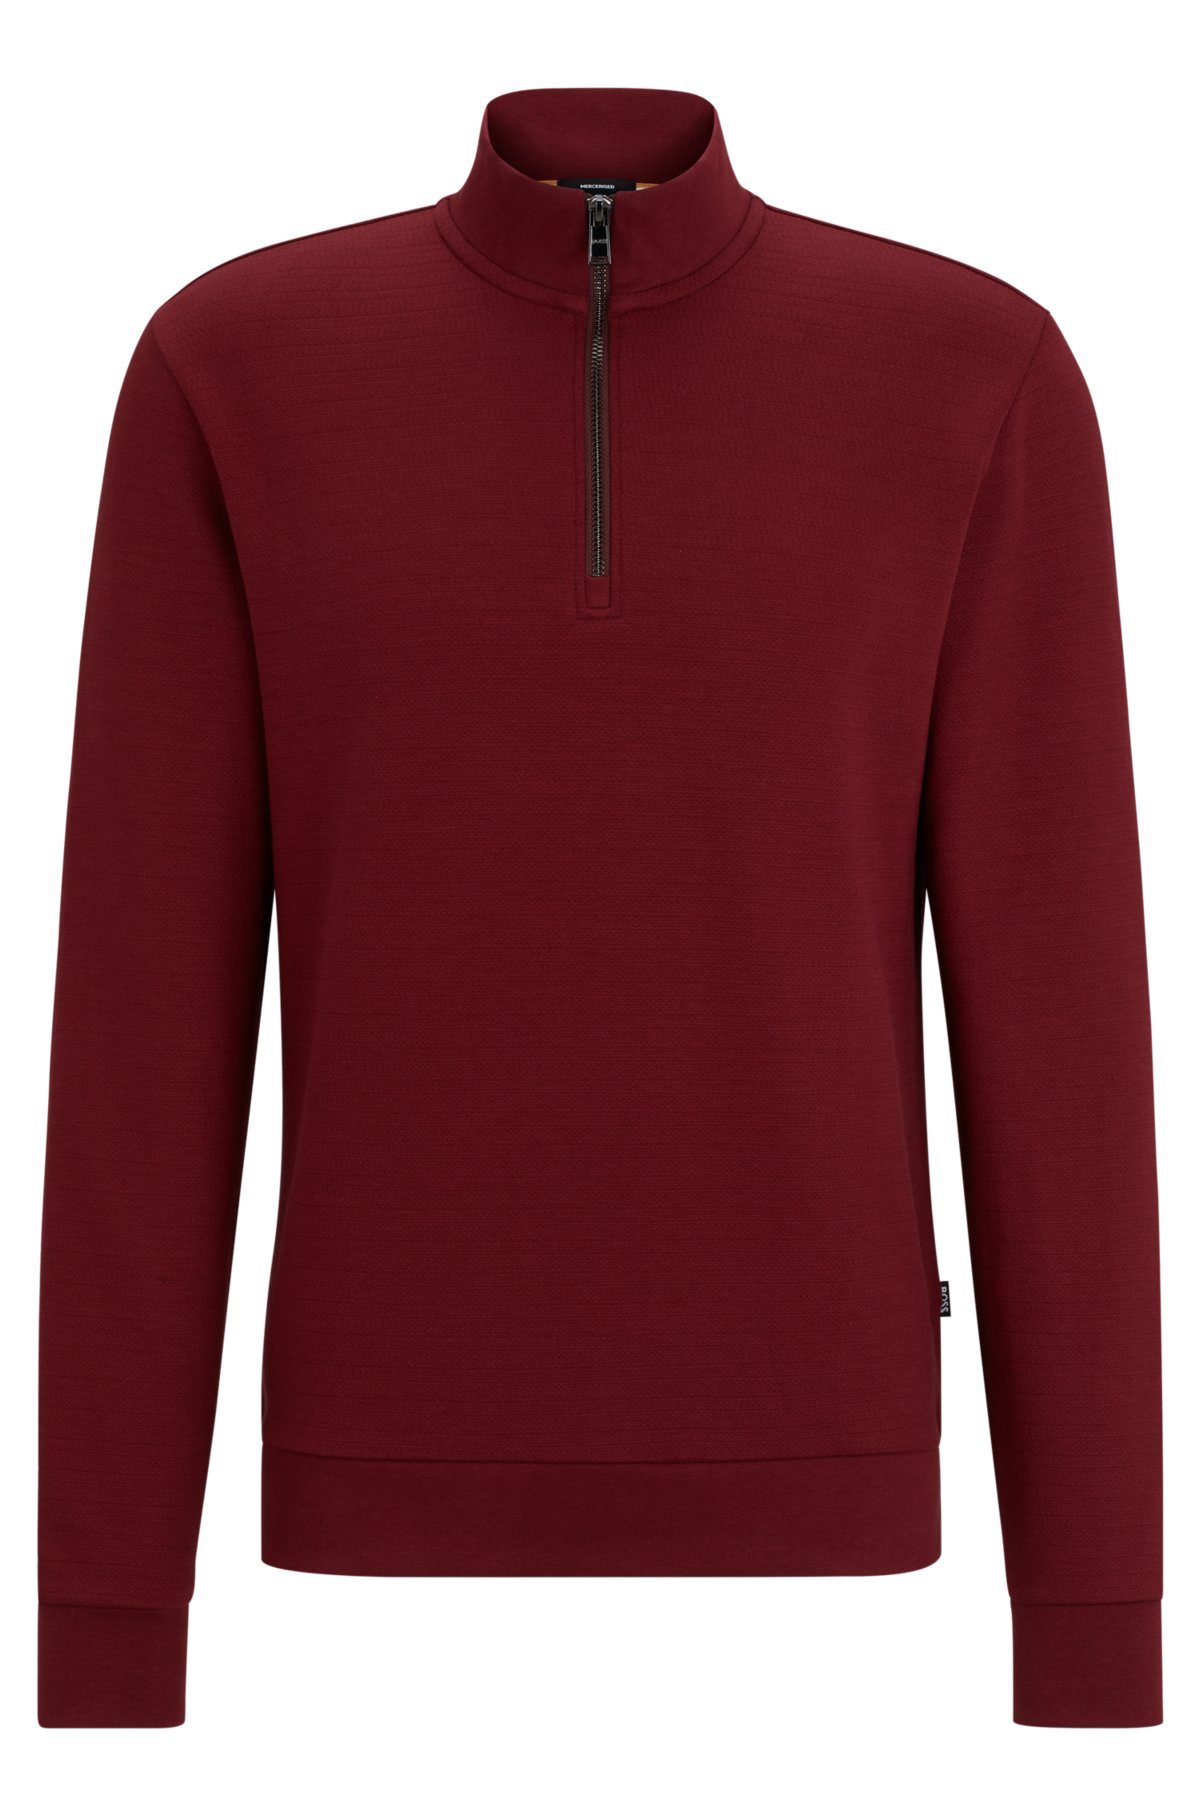 Zip-neck sweatshirt in mercerized cotton jacquard, Dark Red